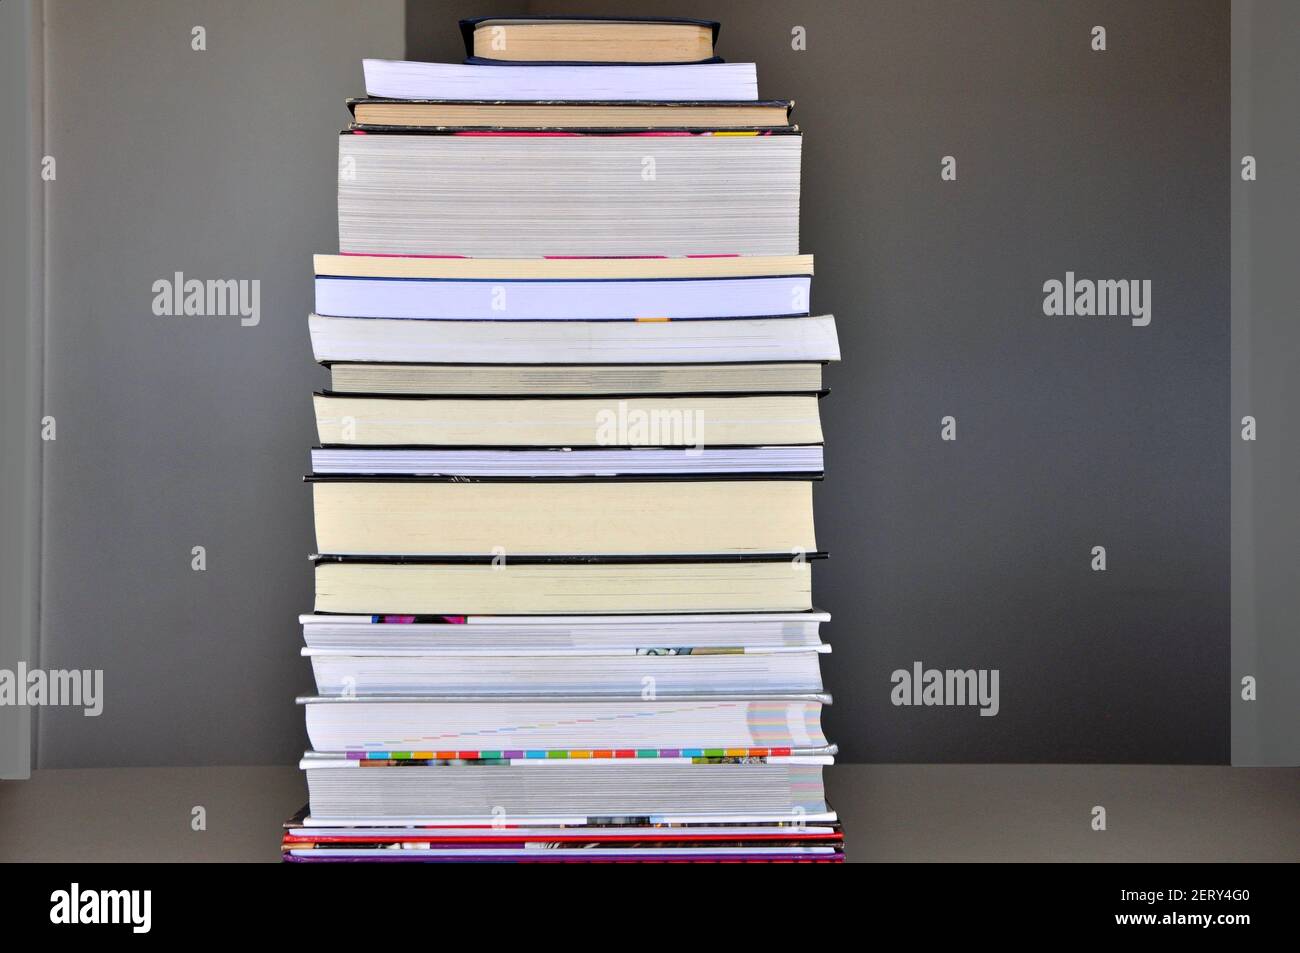 Bücher, Stapel von Büchern auf einem Tisch bilden eine Pyramide des Wissens, Bücher von verschiedenen Stilen und Farben,. Brasilien, Südamerika Stockfoto